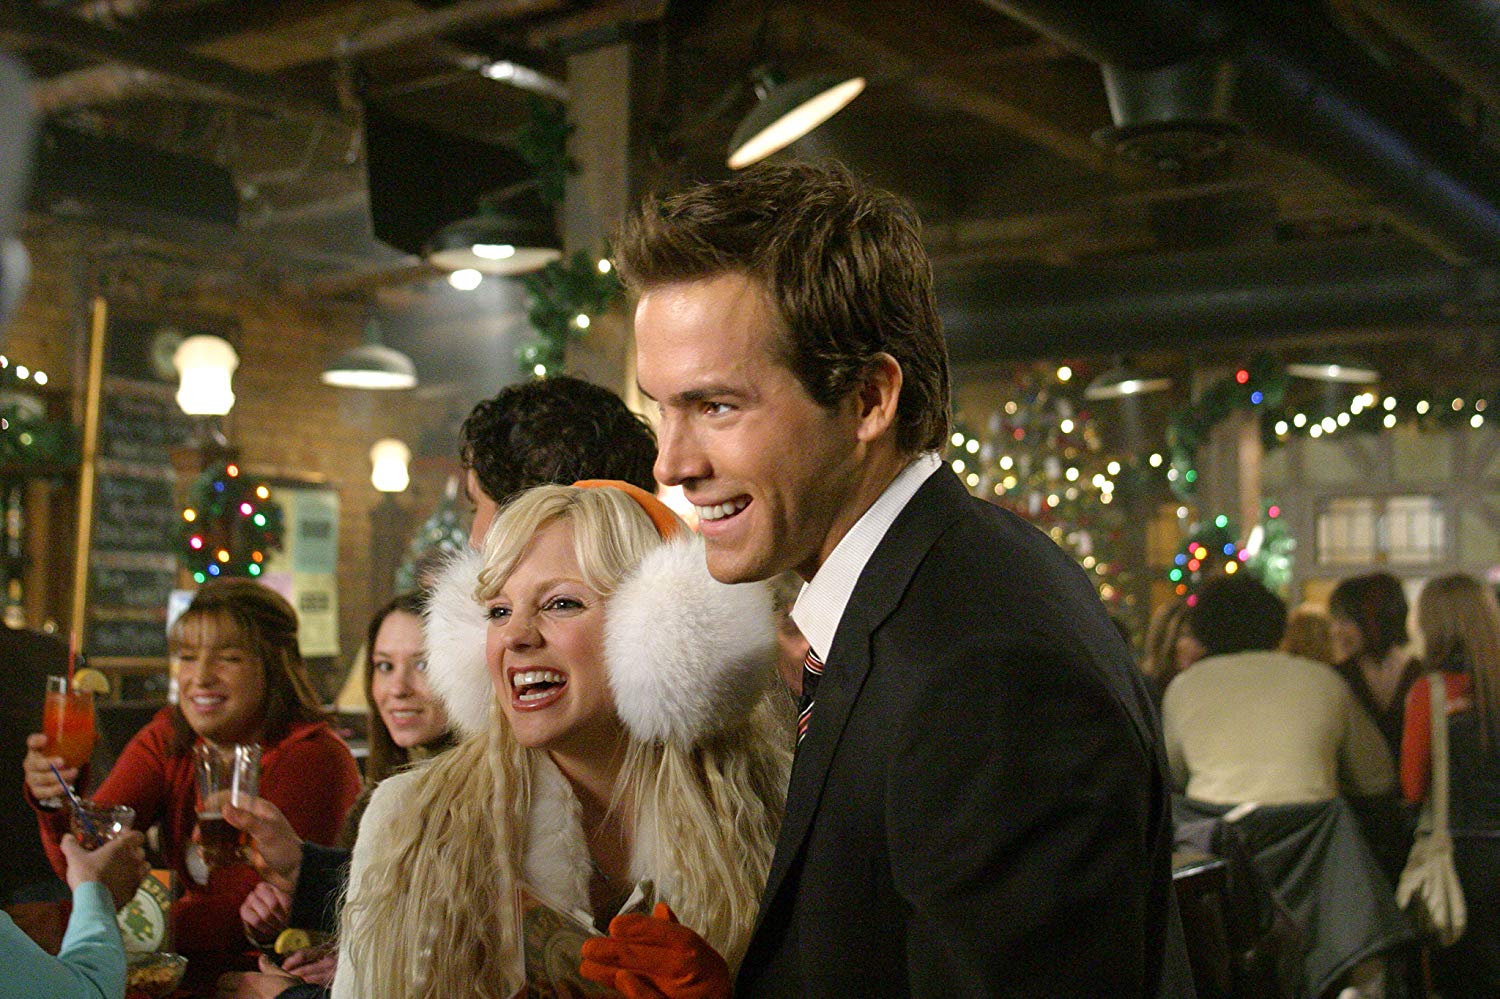  Γιατί το Just Friends του Ryan Reynolds δεν έχει γίνει Χριστουγεννιάτικη παράδοση;